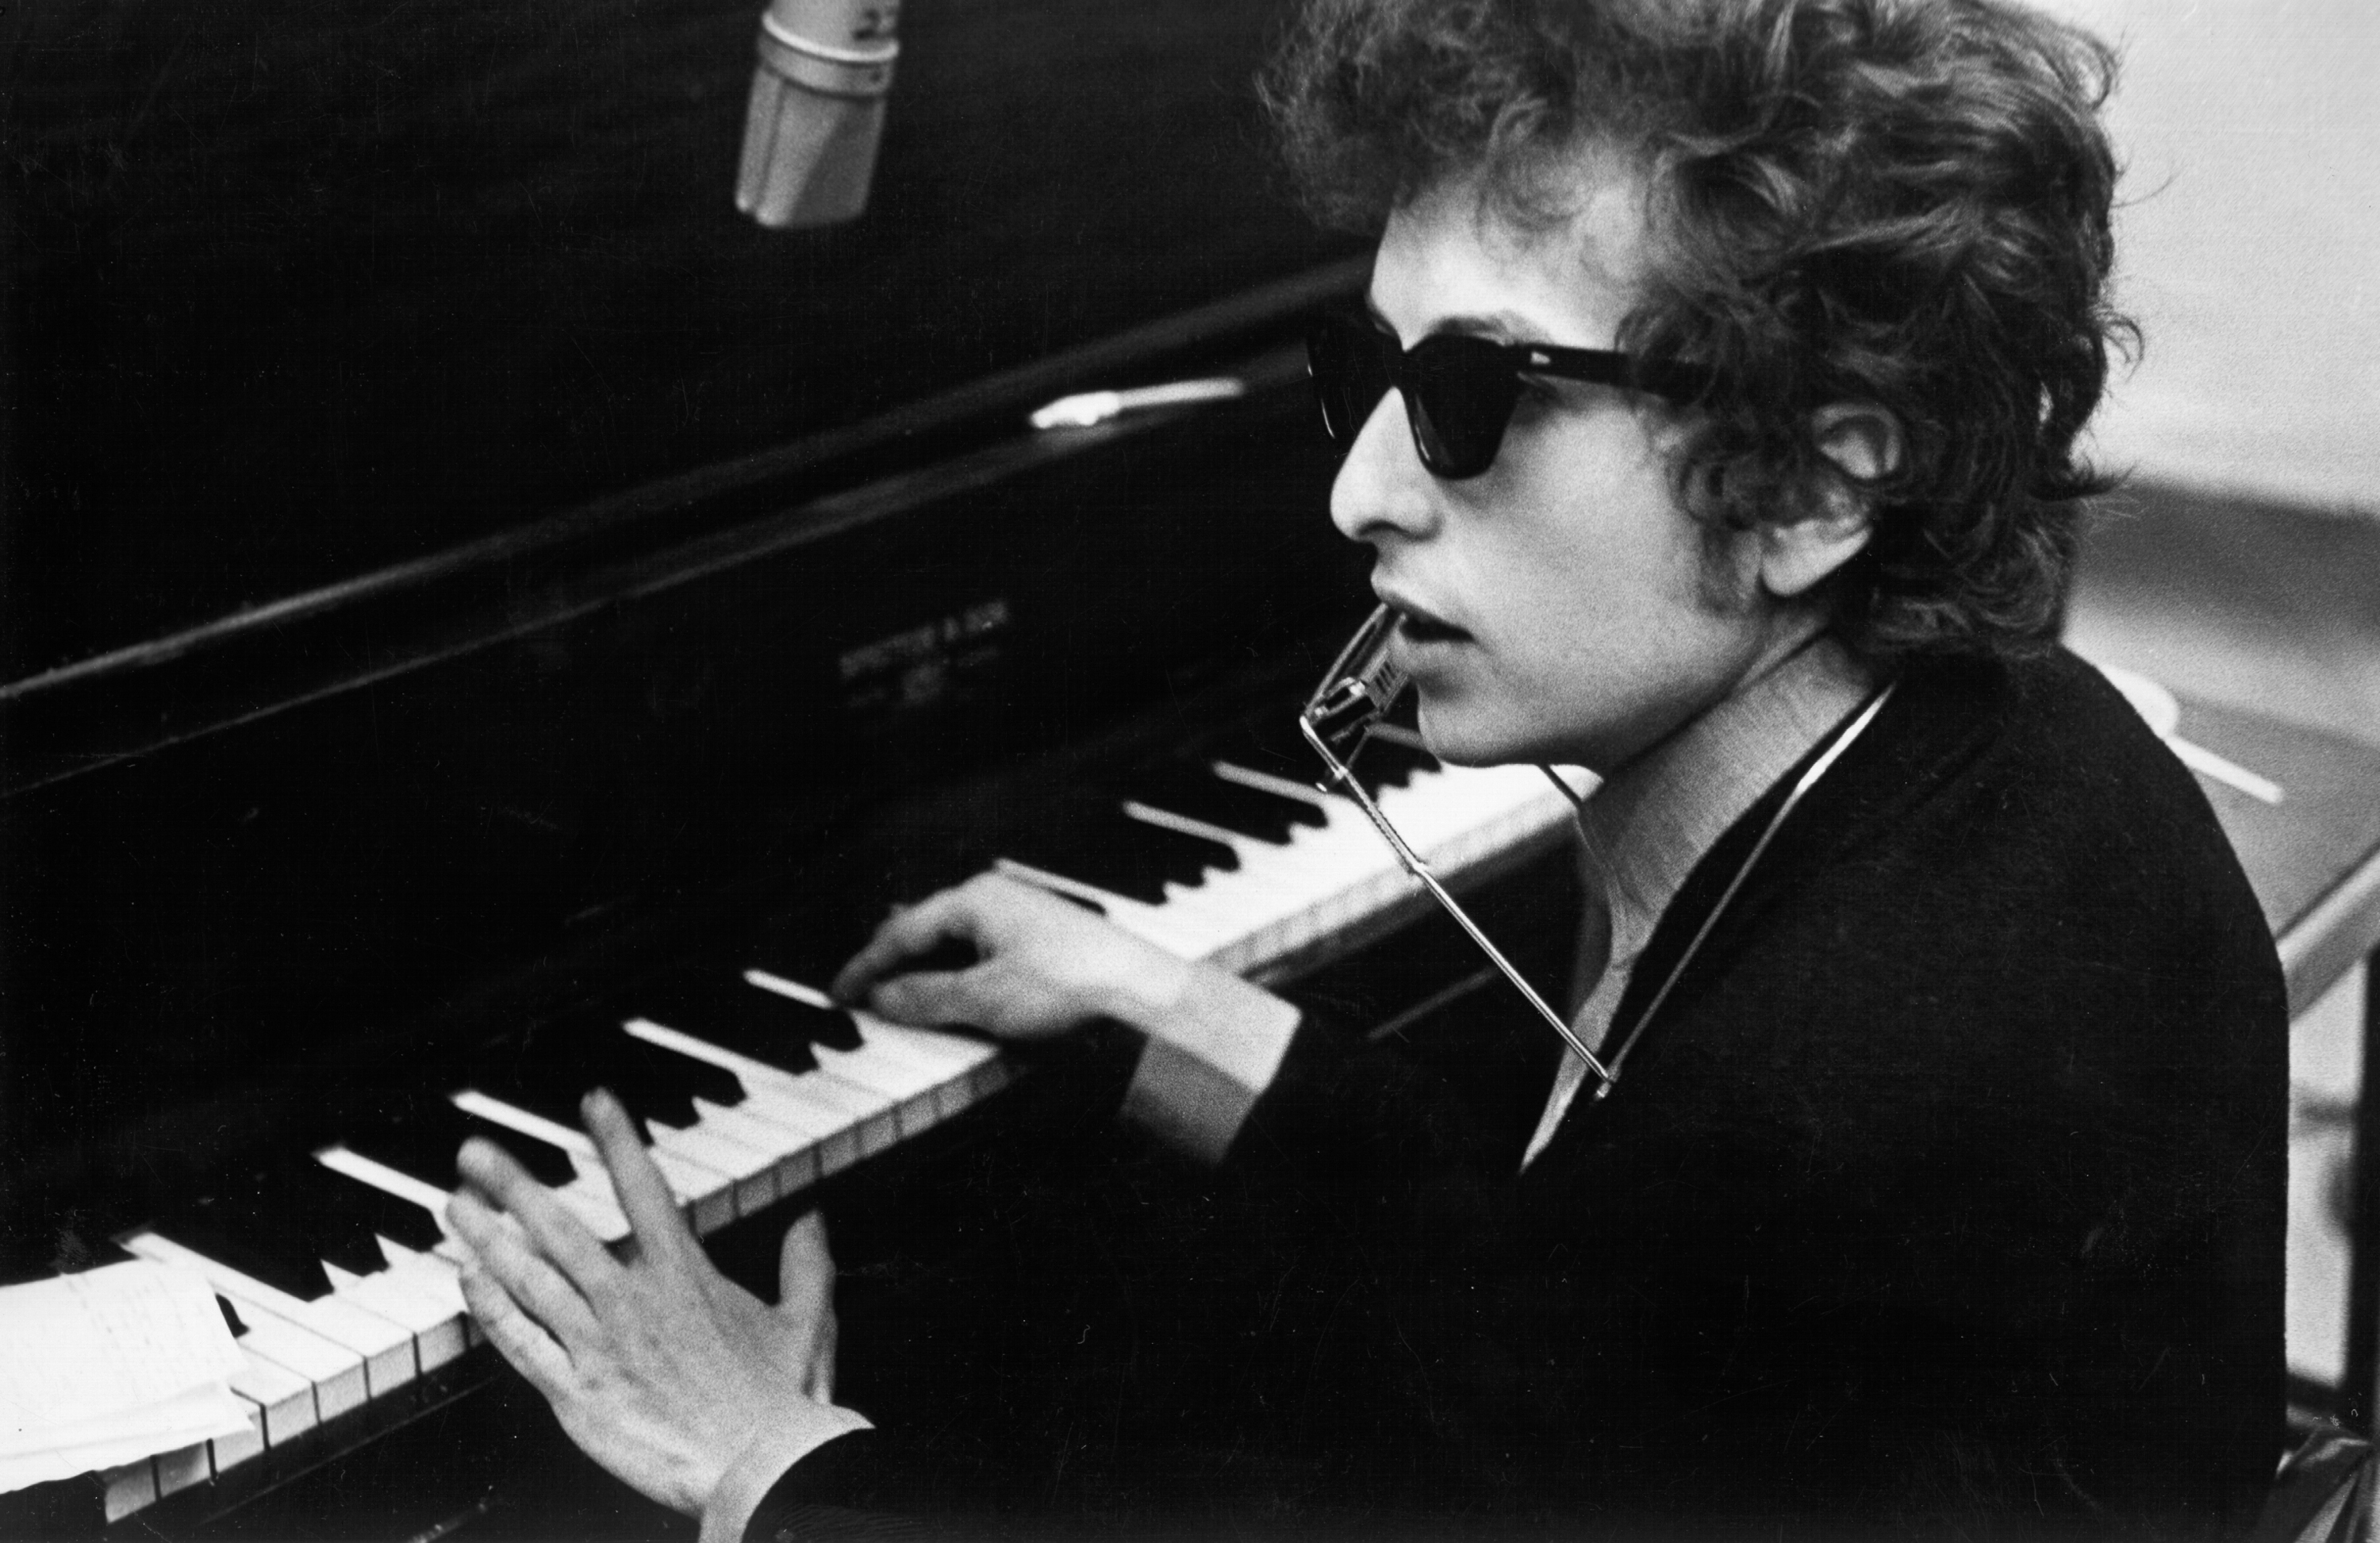 Bob Dylan playing songs at a piano